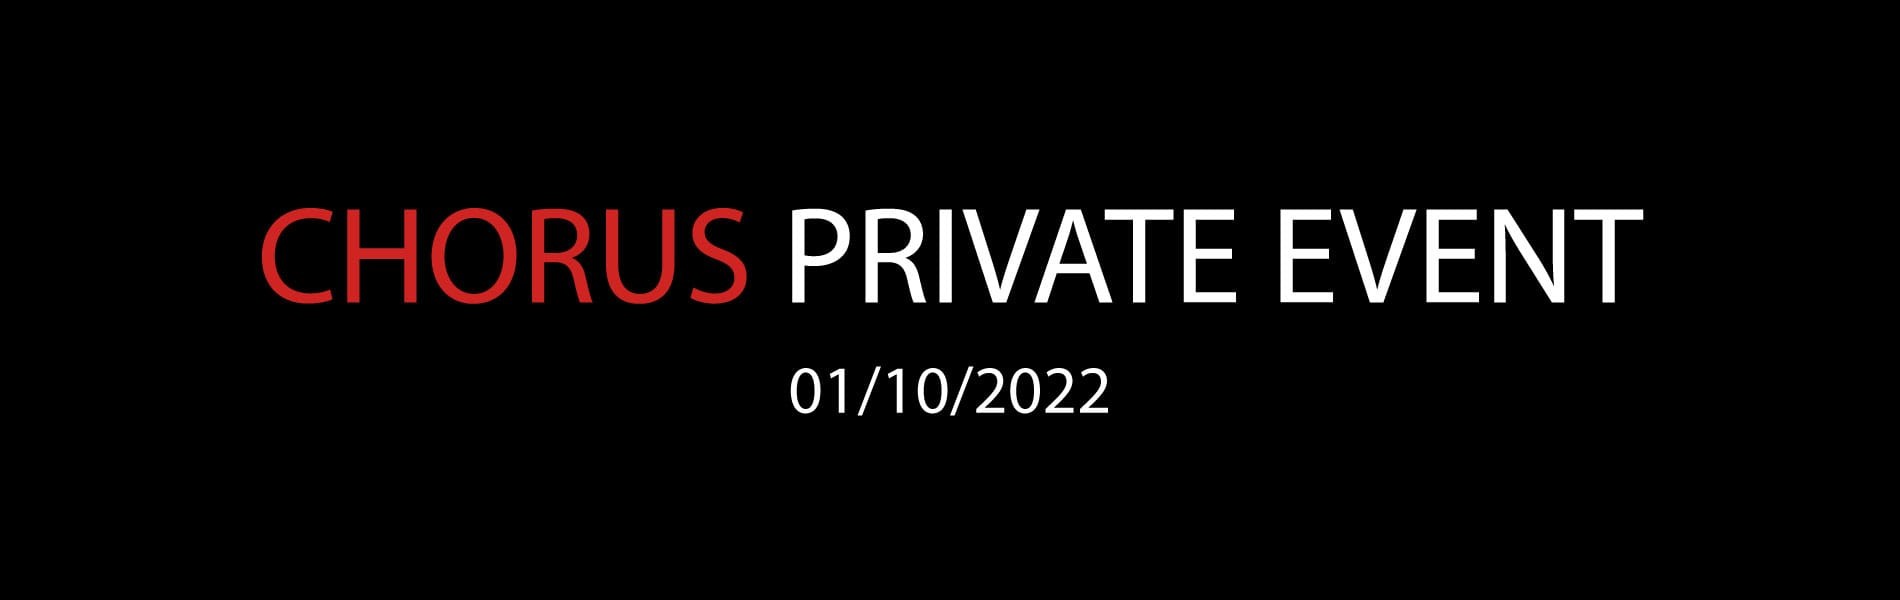 CHORUS PRIVATE EVENT 1/10/2022